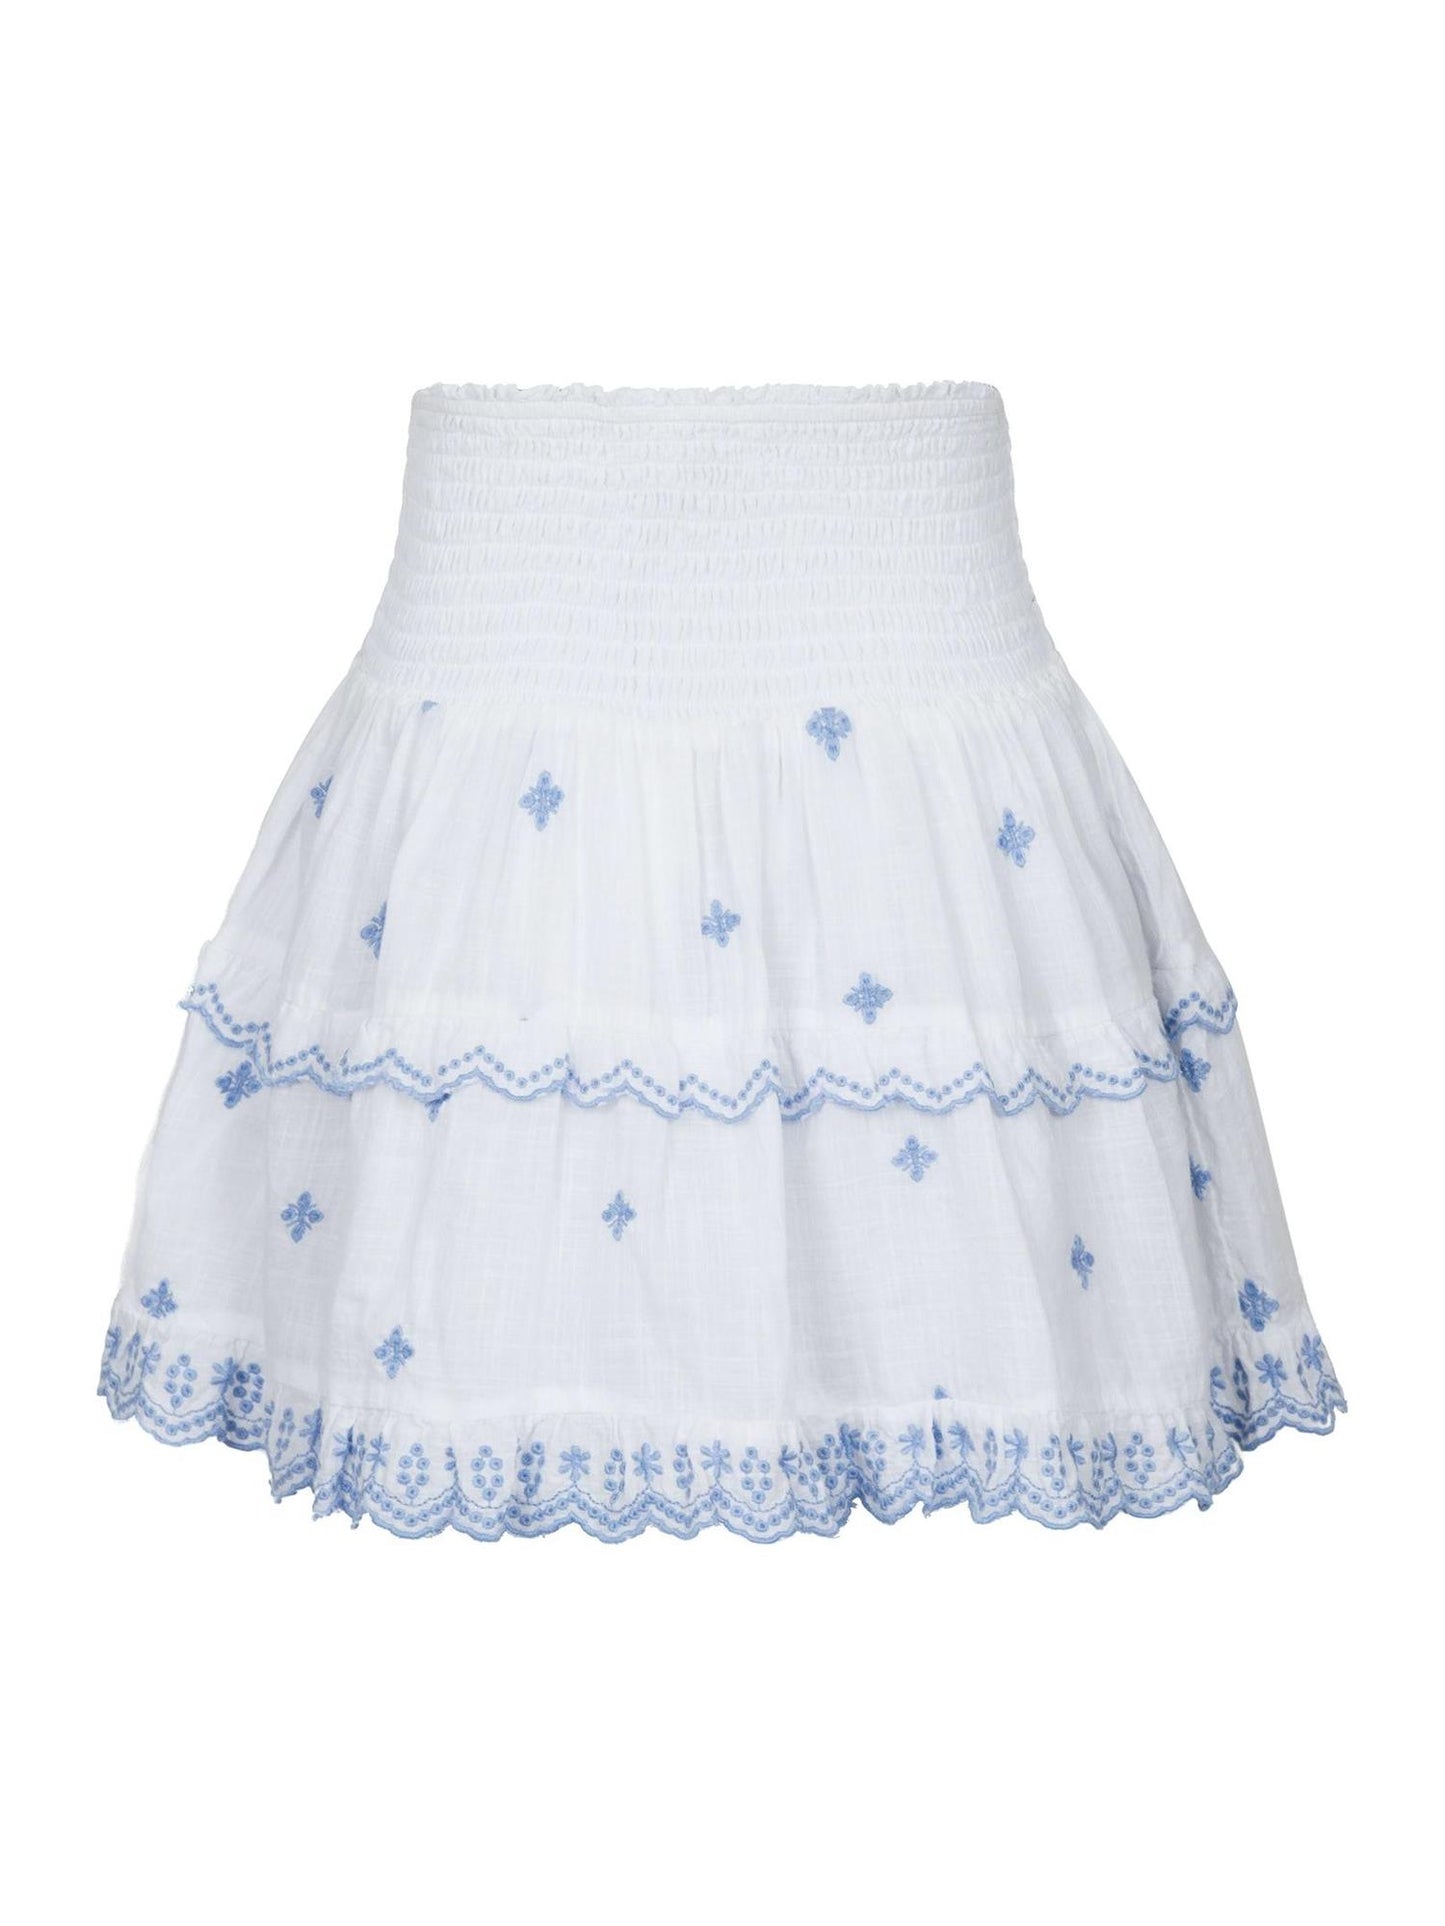 Lando Skirt - White & Light Blue